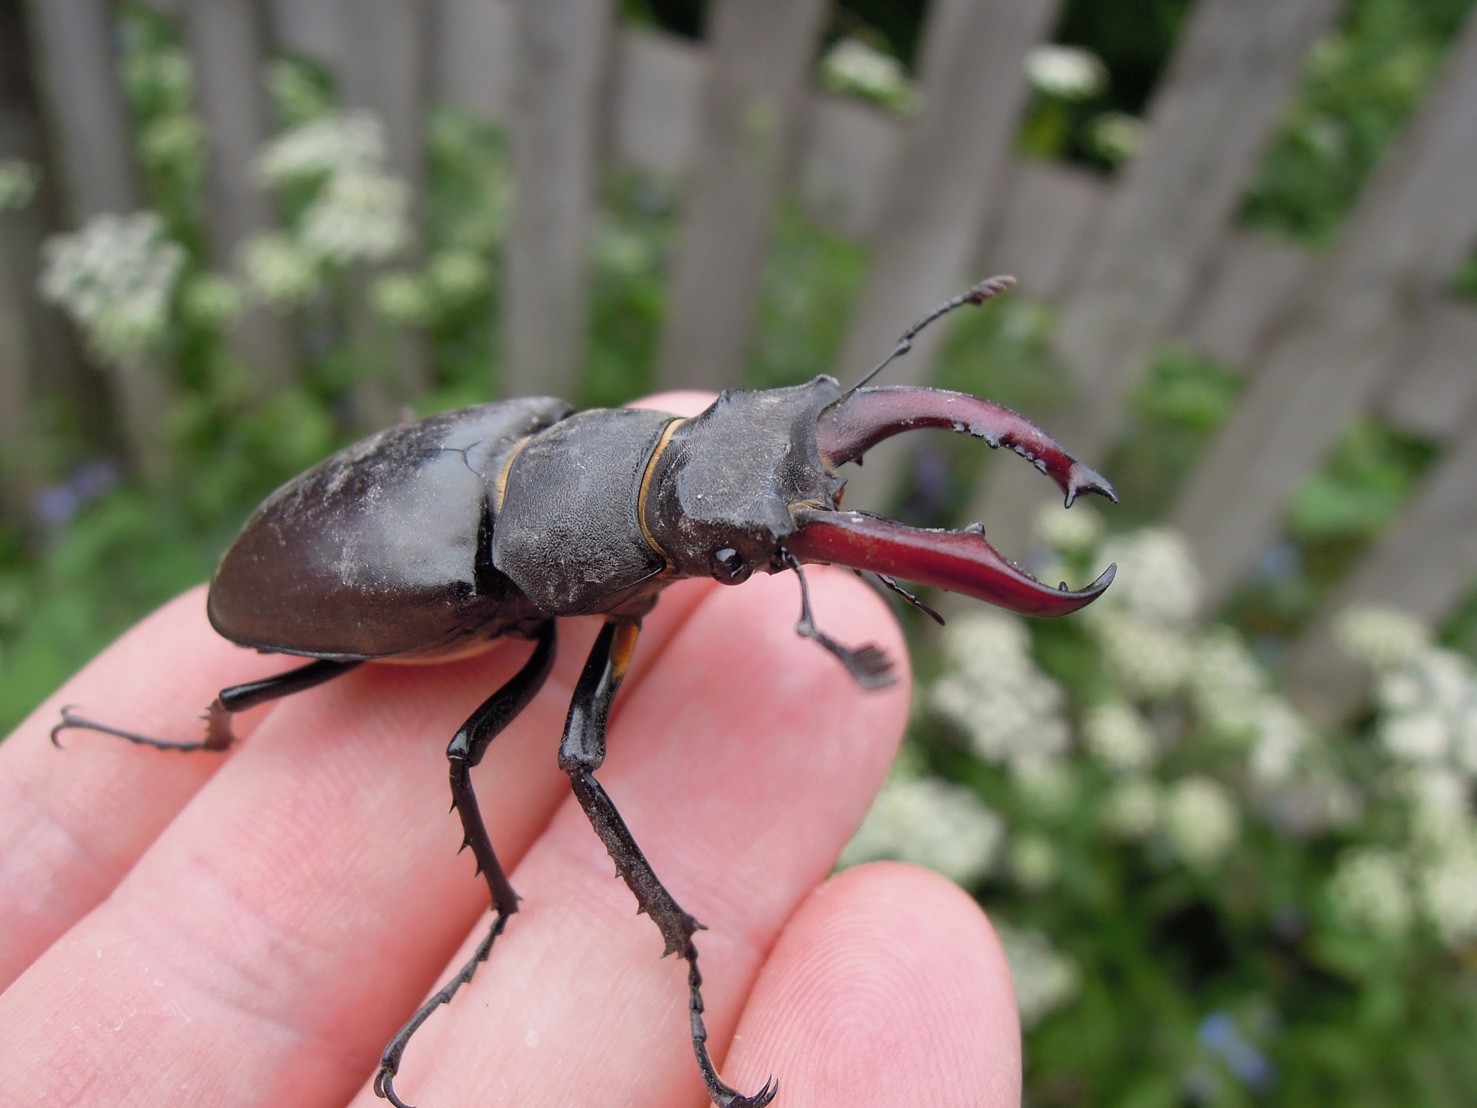 Male Stag Beetle Lucanus cervus